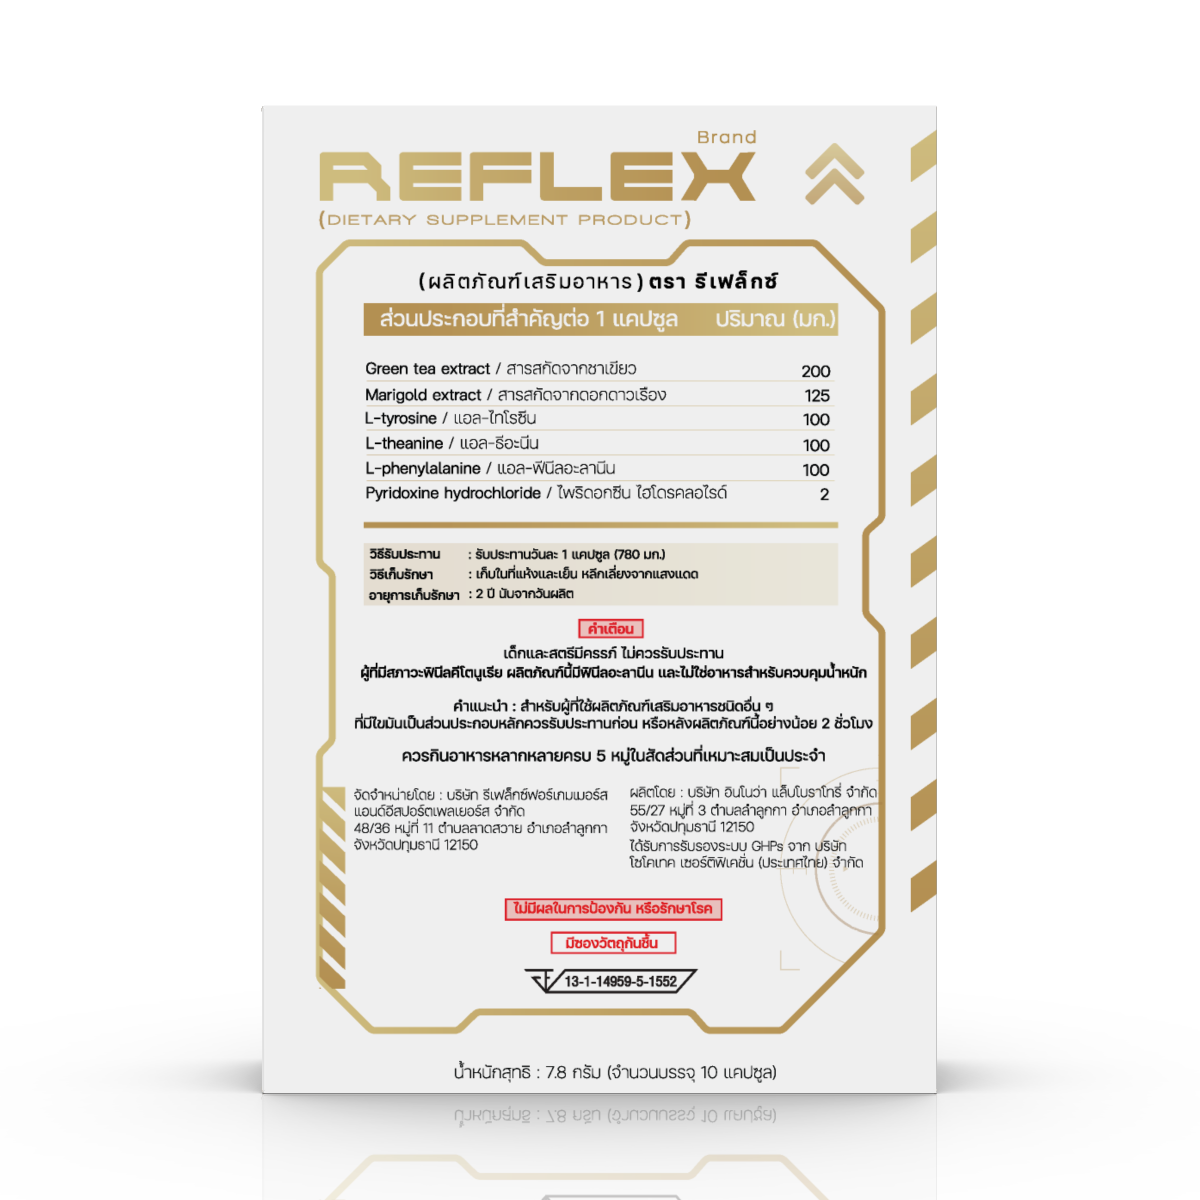 REFLEX dietary supplement product, brand REFLEX – Reflex Brand